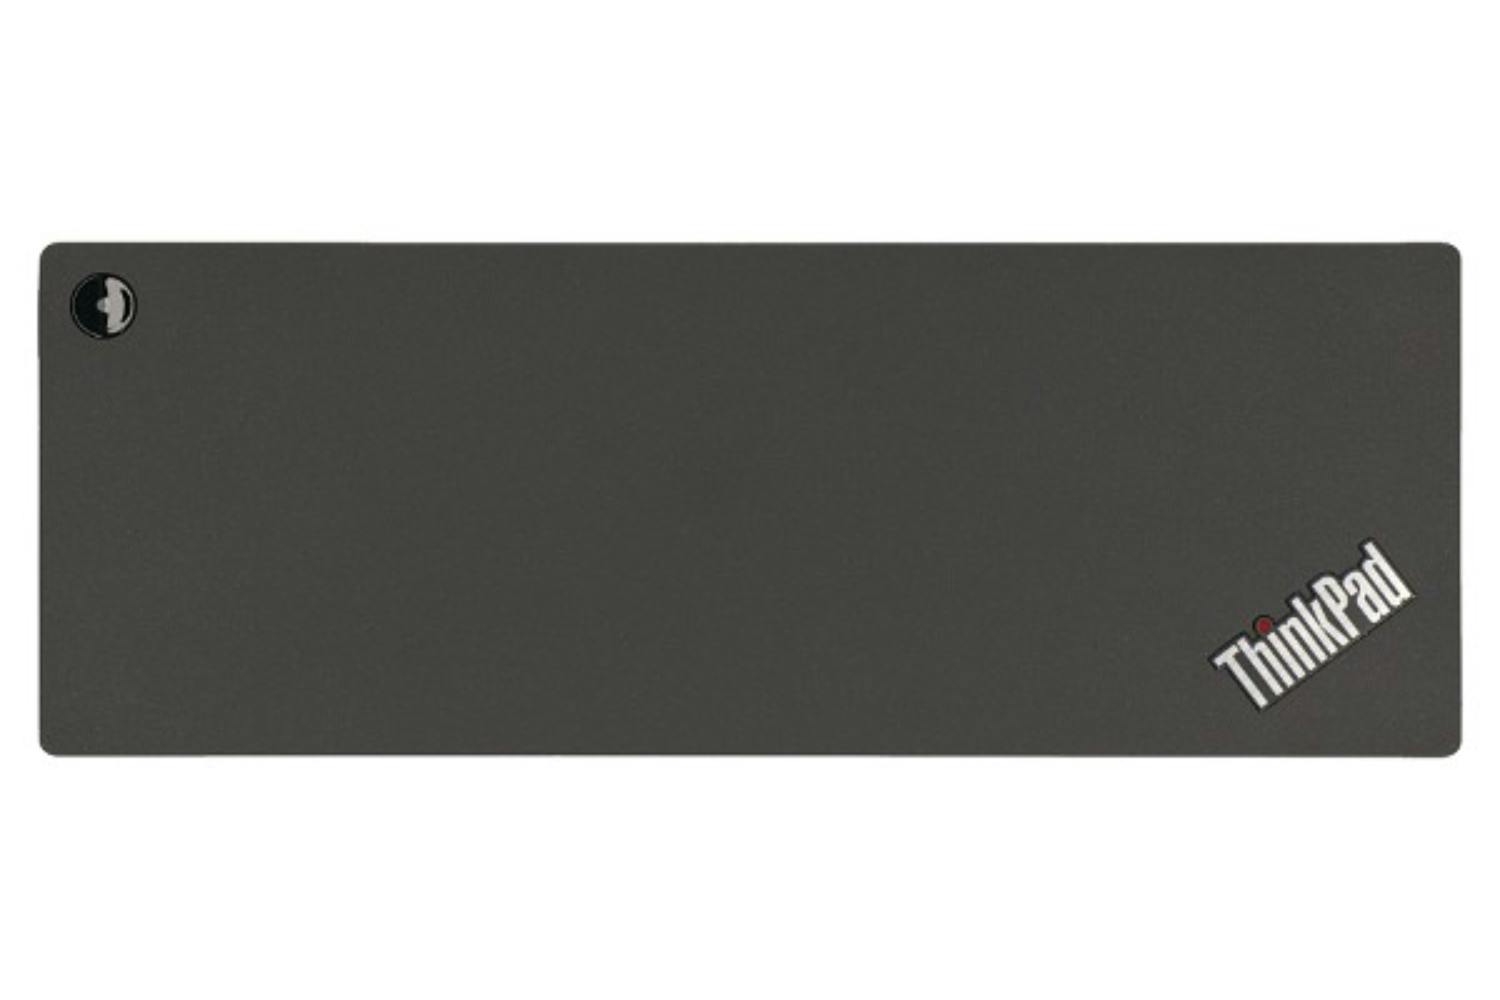 Lenovo 40AN0135BR 135W ThinkPad Thunderbolt 3 Dock